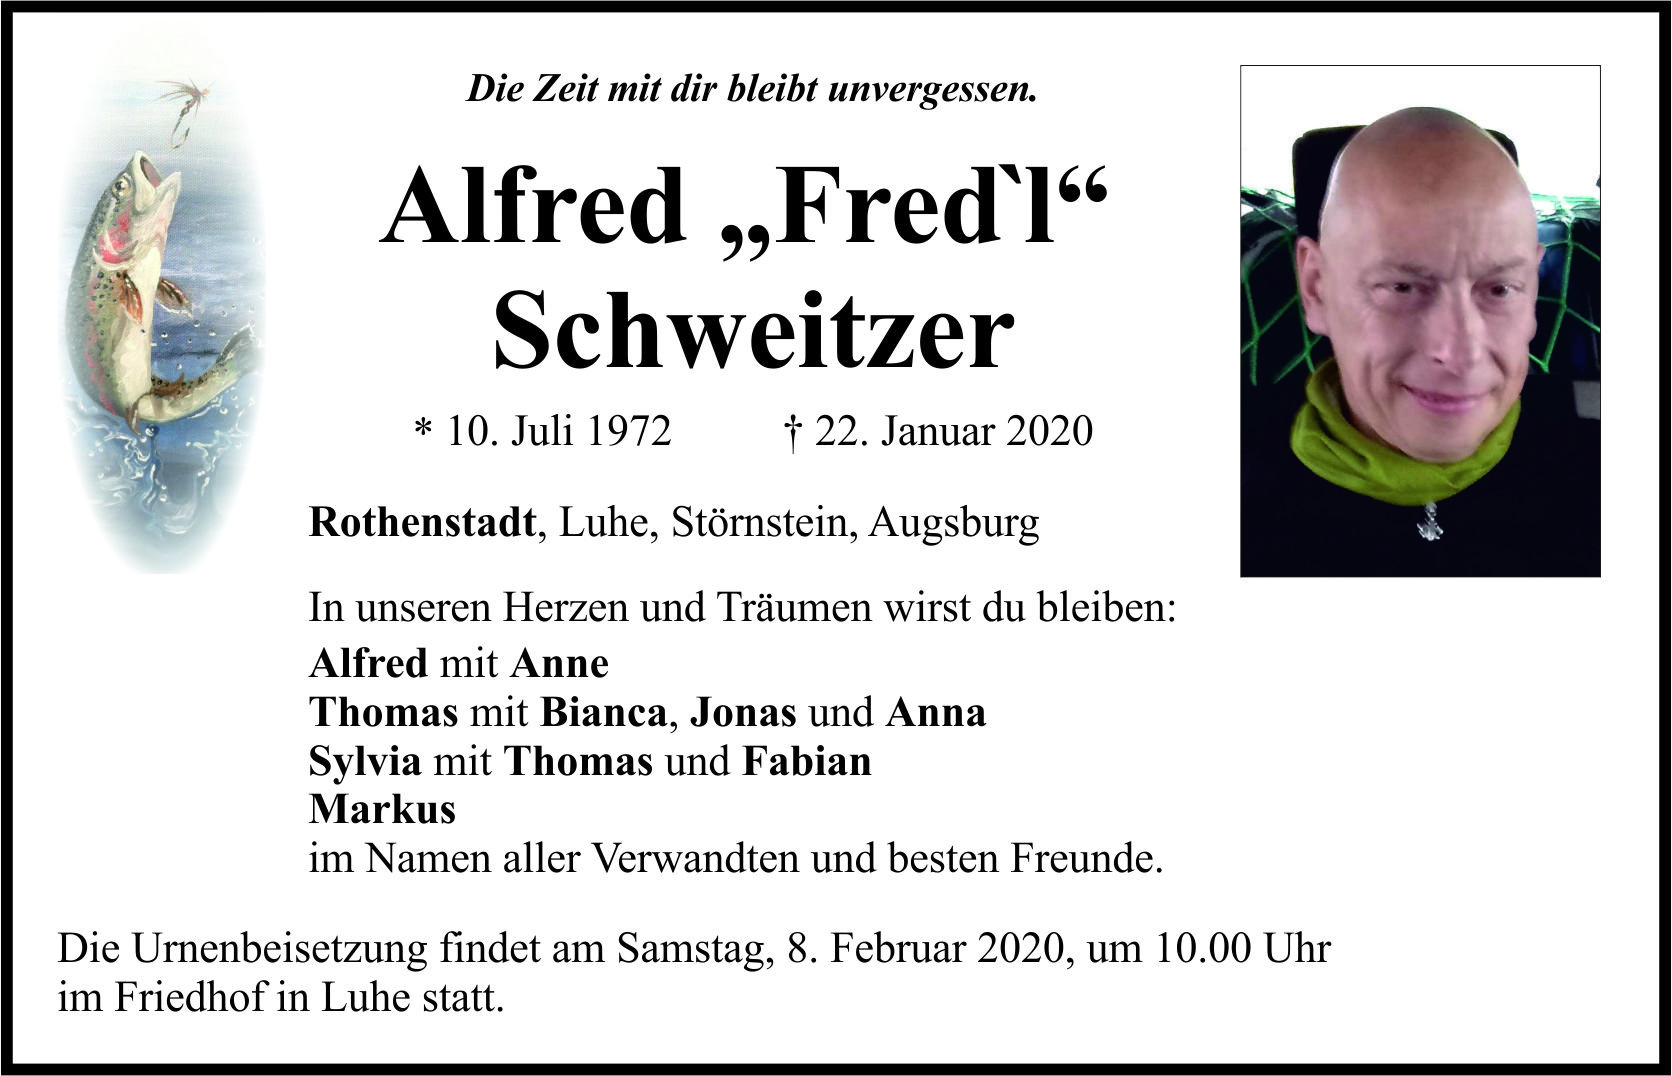 Traueranzeige Alfred „Fred´l“ Schweitzer, Rothenstadt